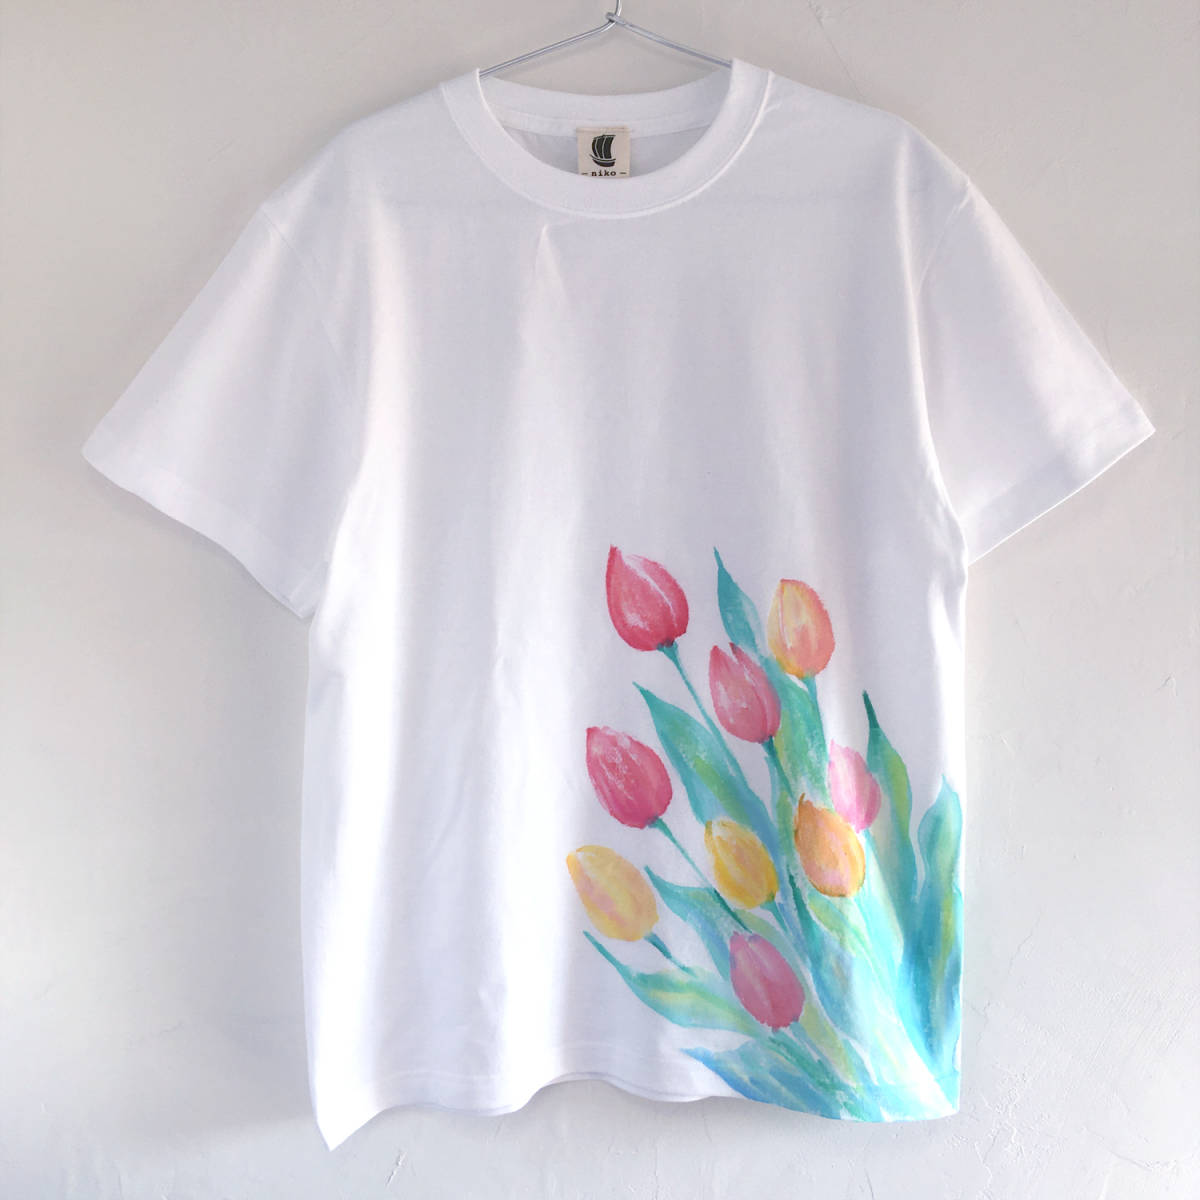 Tulip pattern T-shirt Men's XL size Hand-painted tulip flower pattern T-shirt, XL size and above, round neck, Plain color